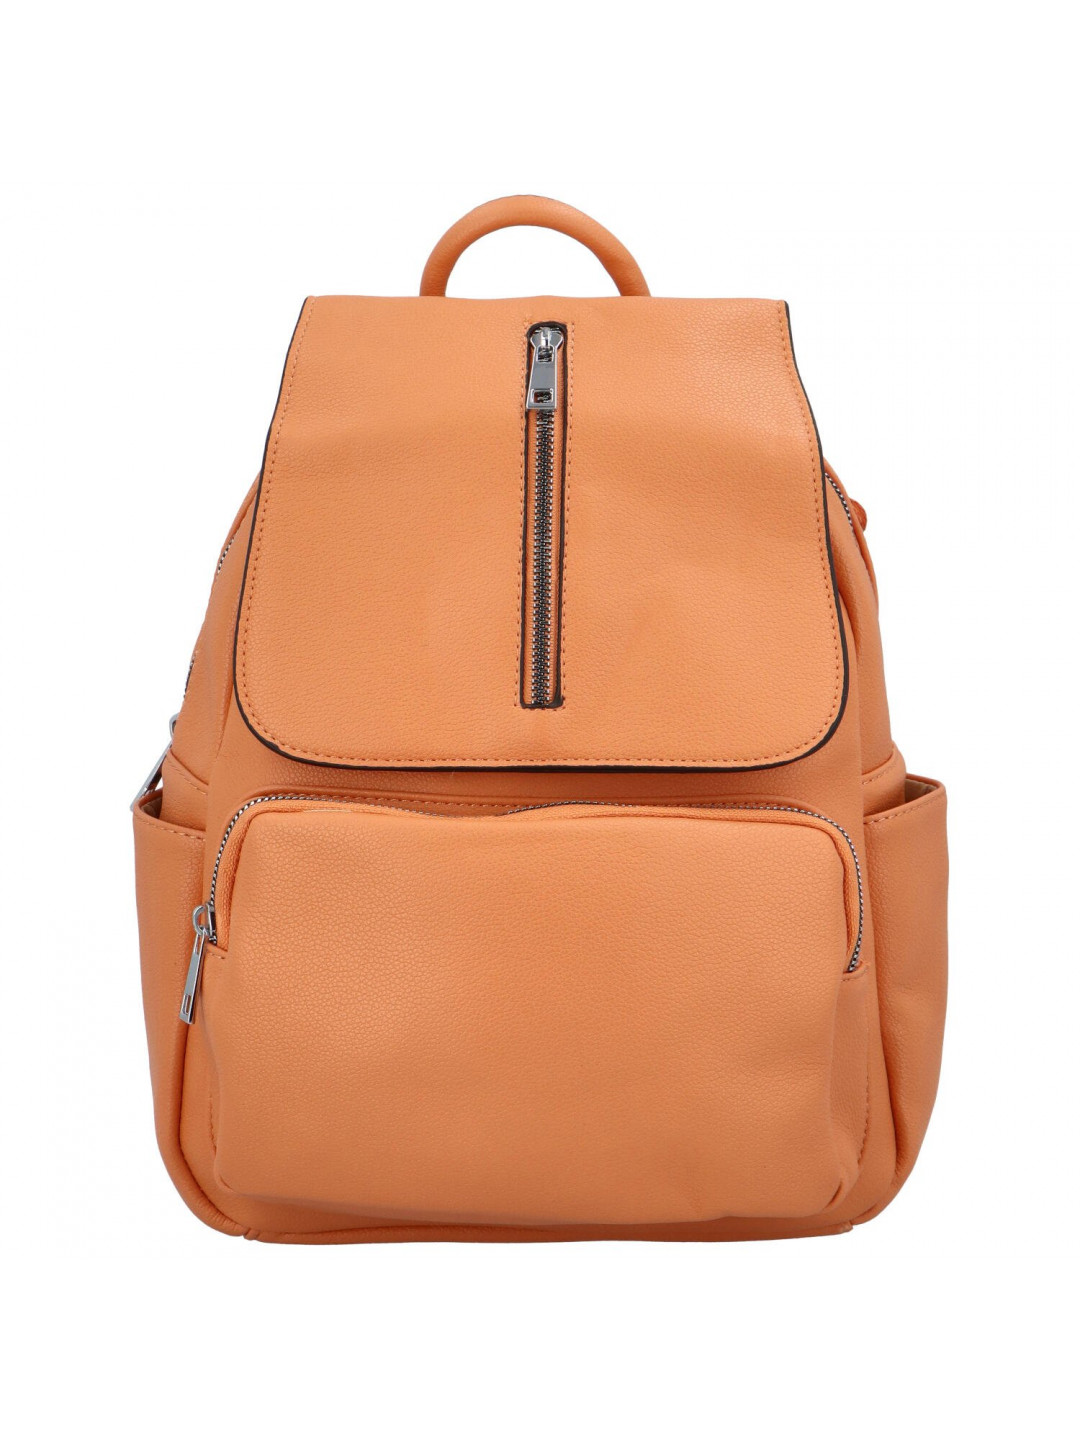 Dámský batoh kabelka pastelově oranžový – Maria C Otoros